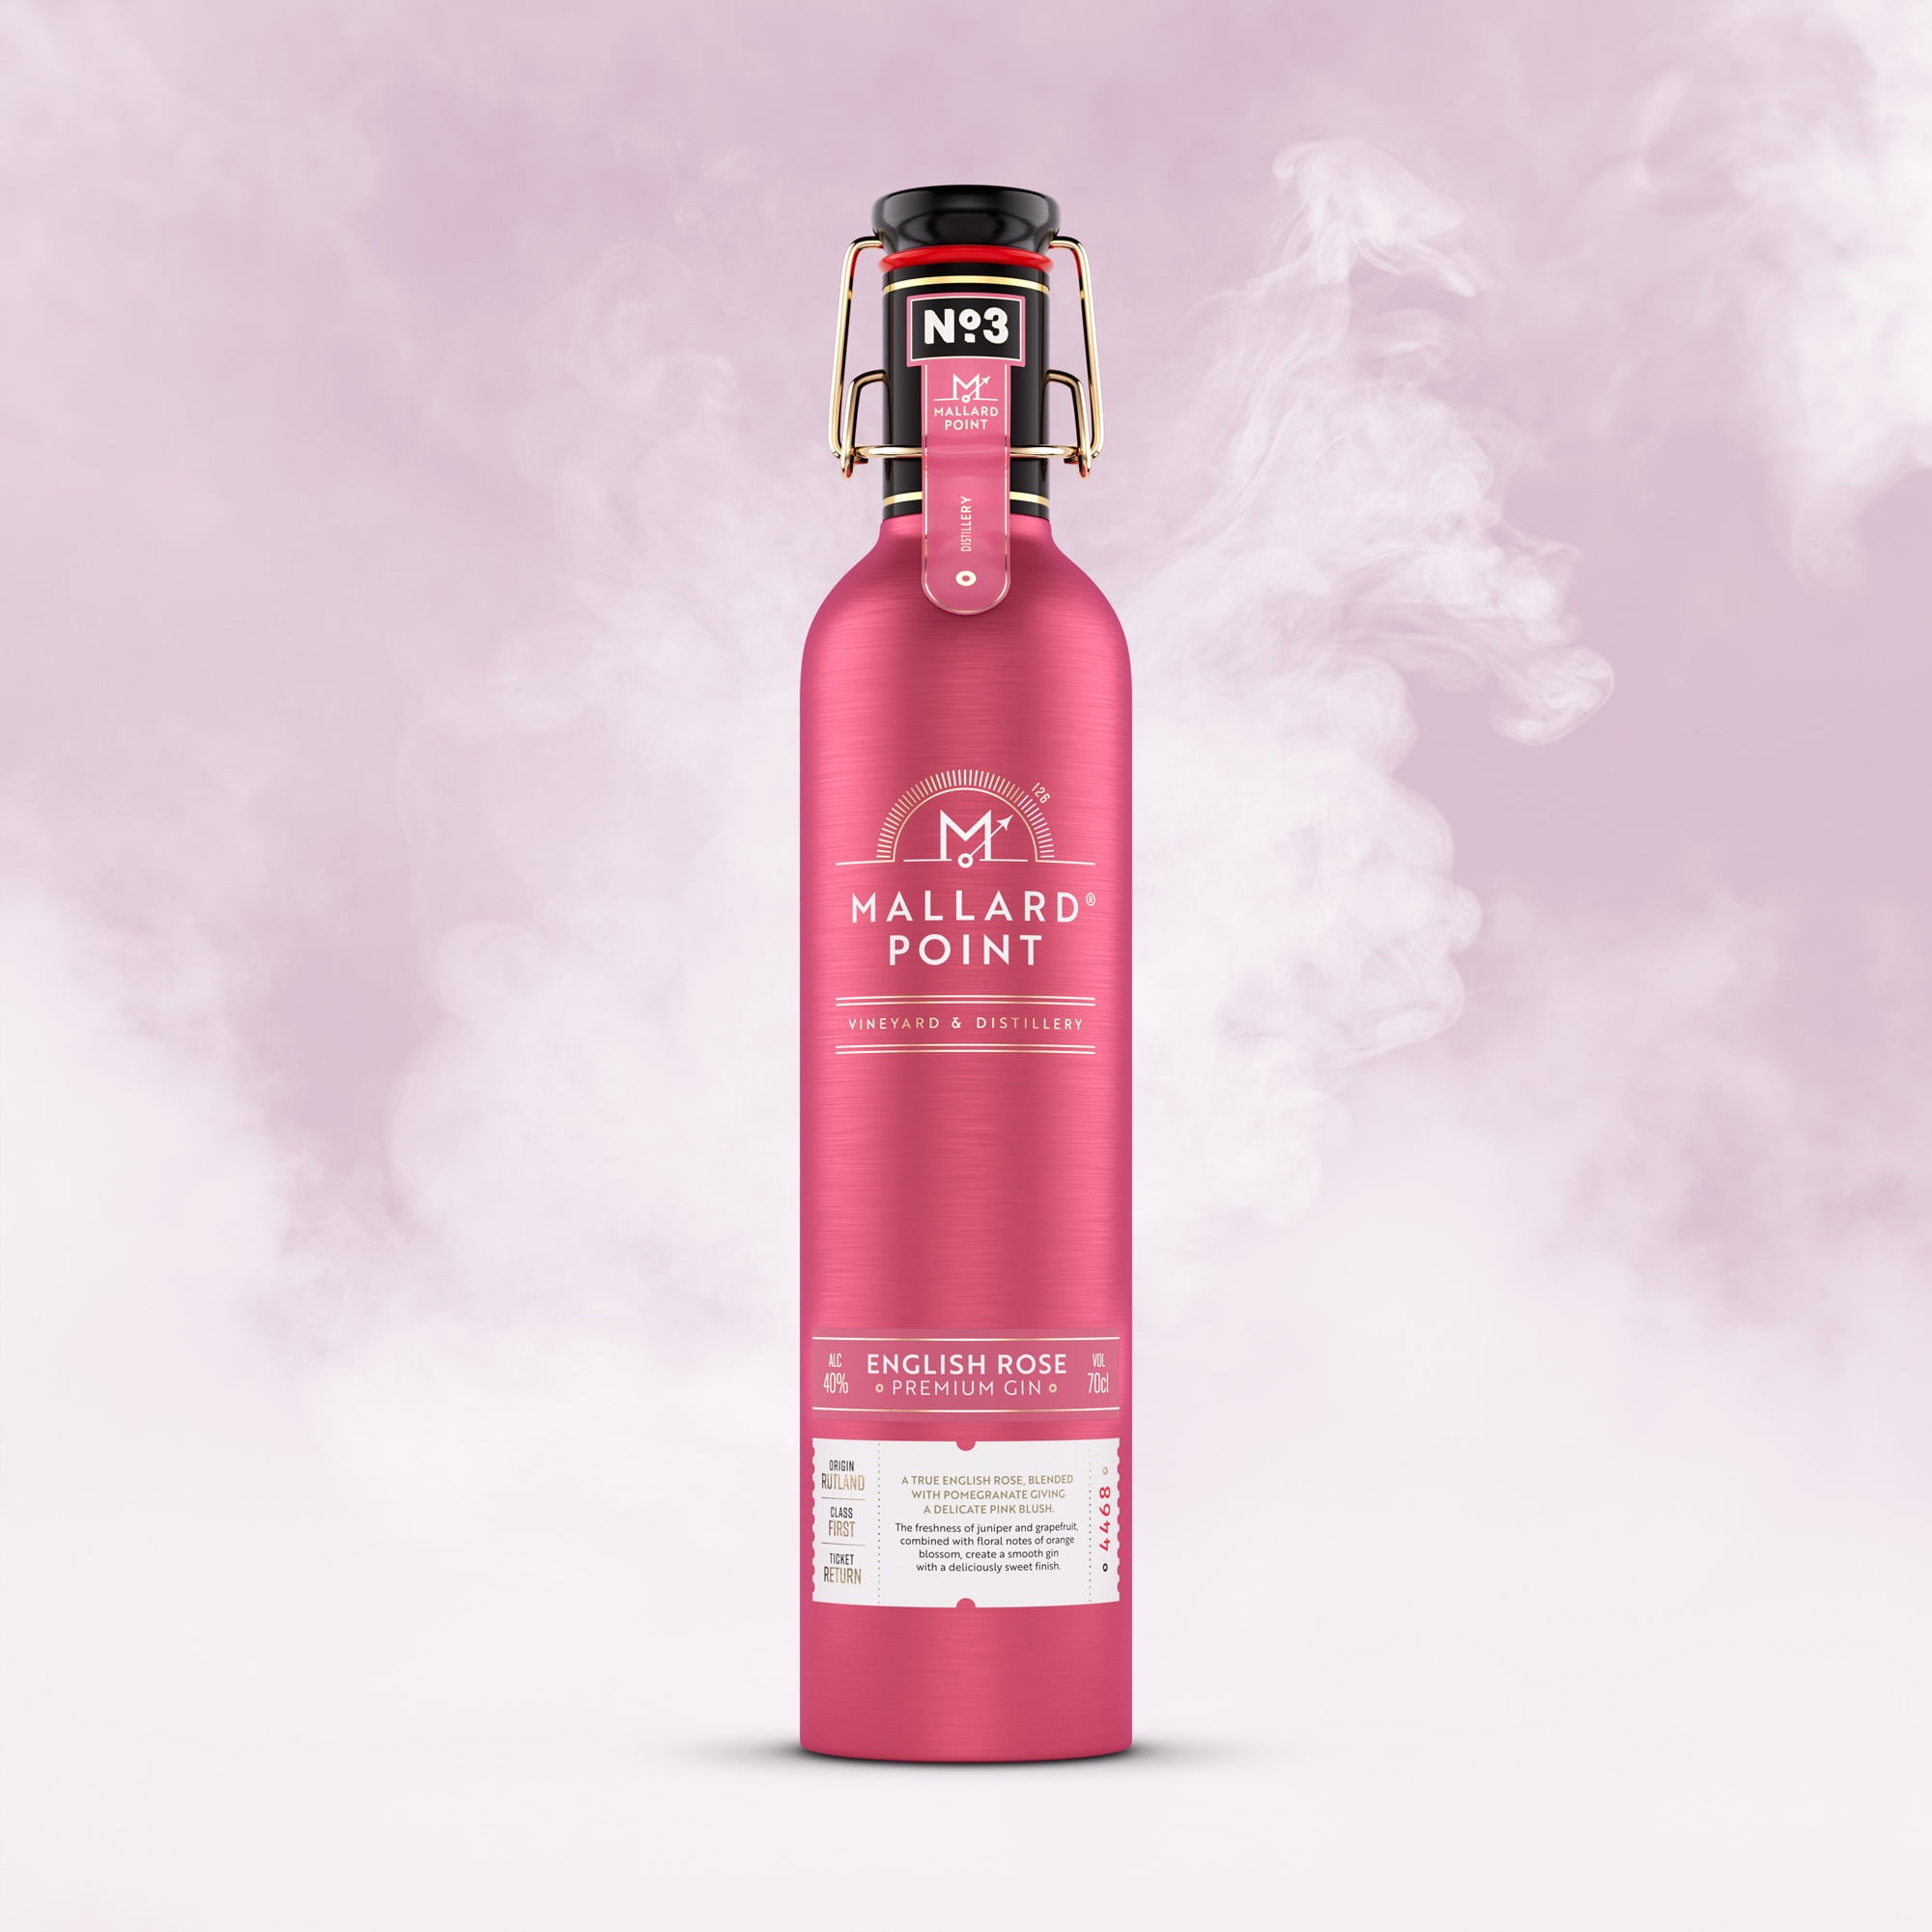 Mallard Point - English Rose Gin